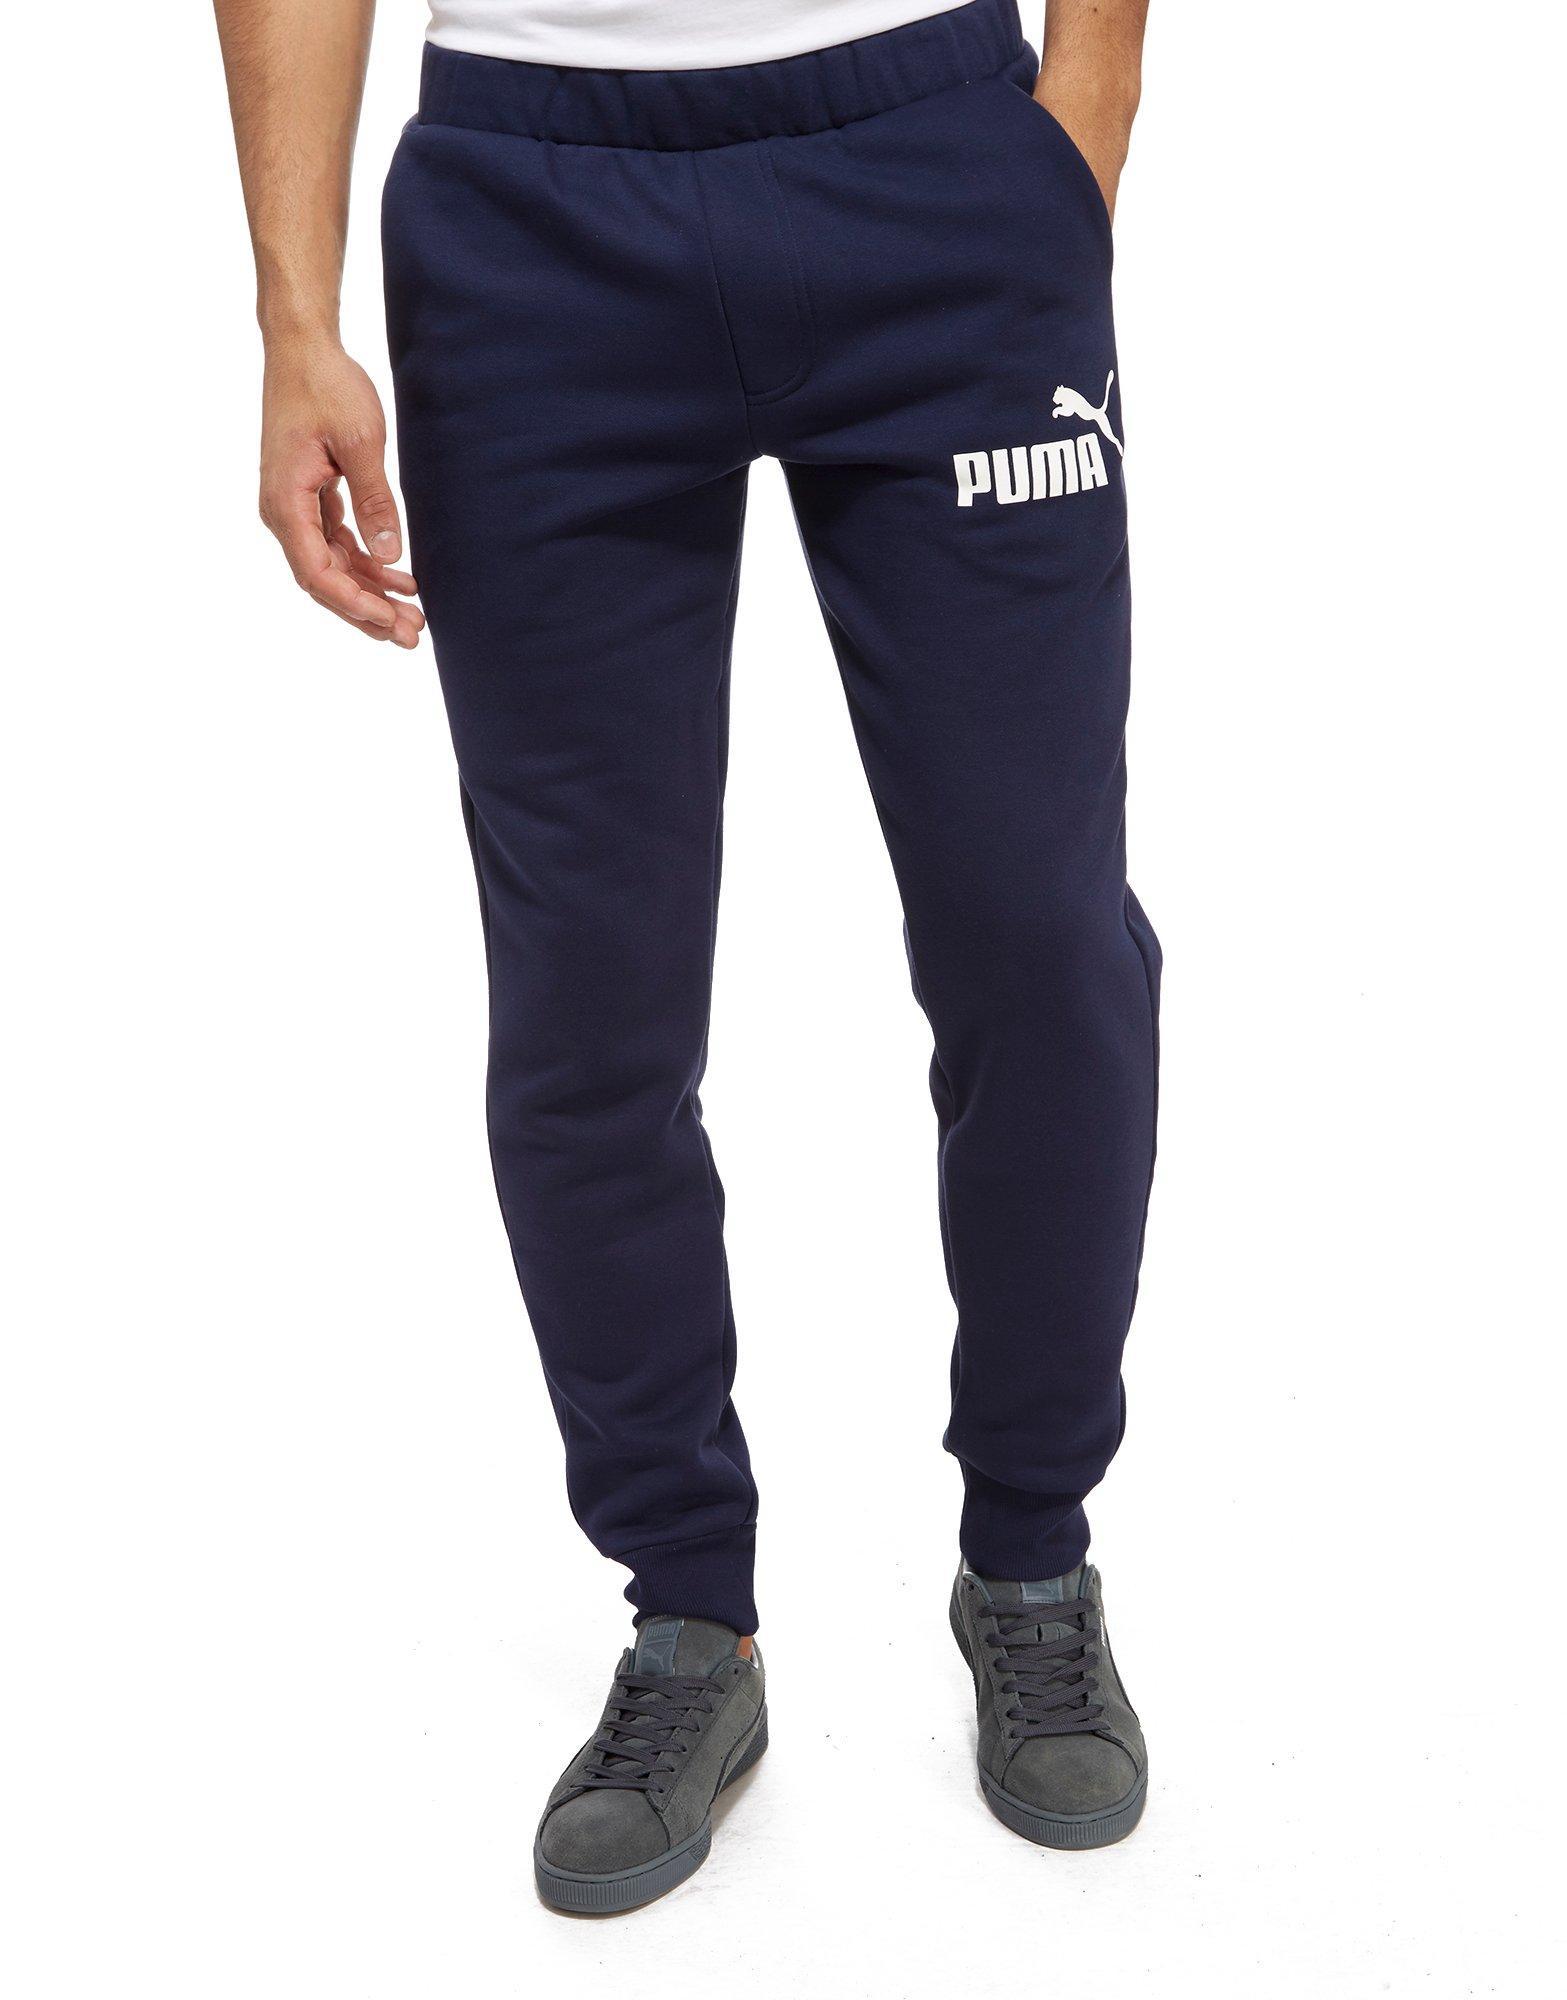 puma core logo pants